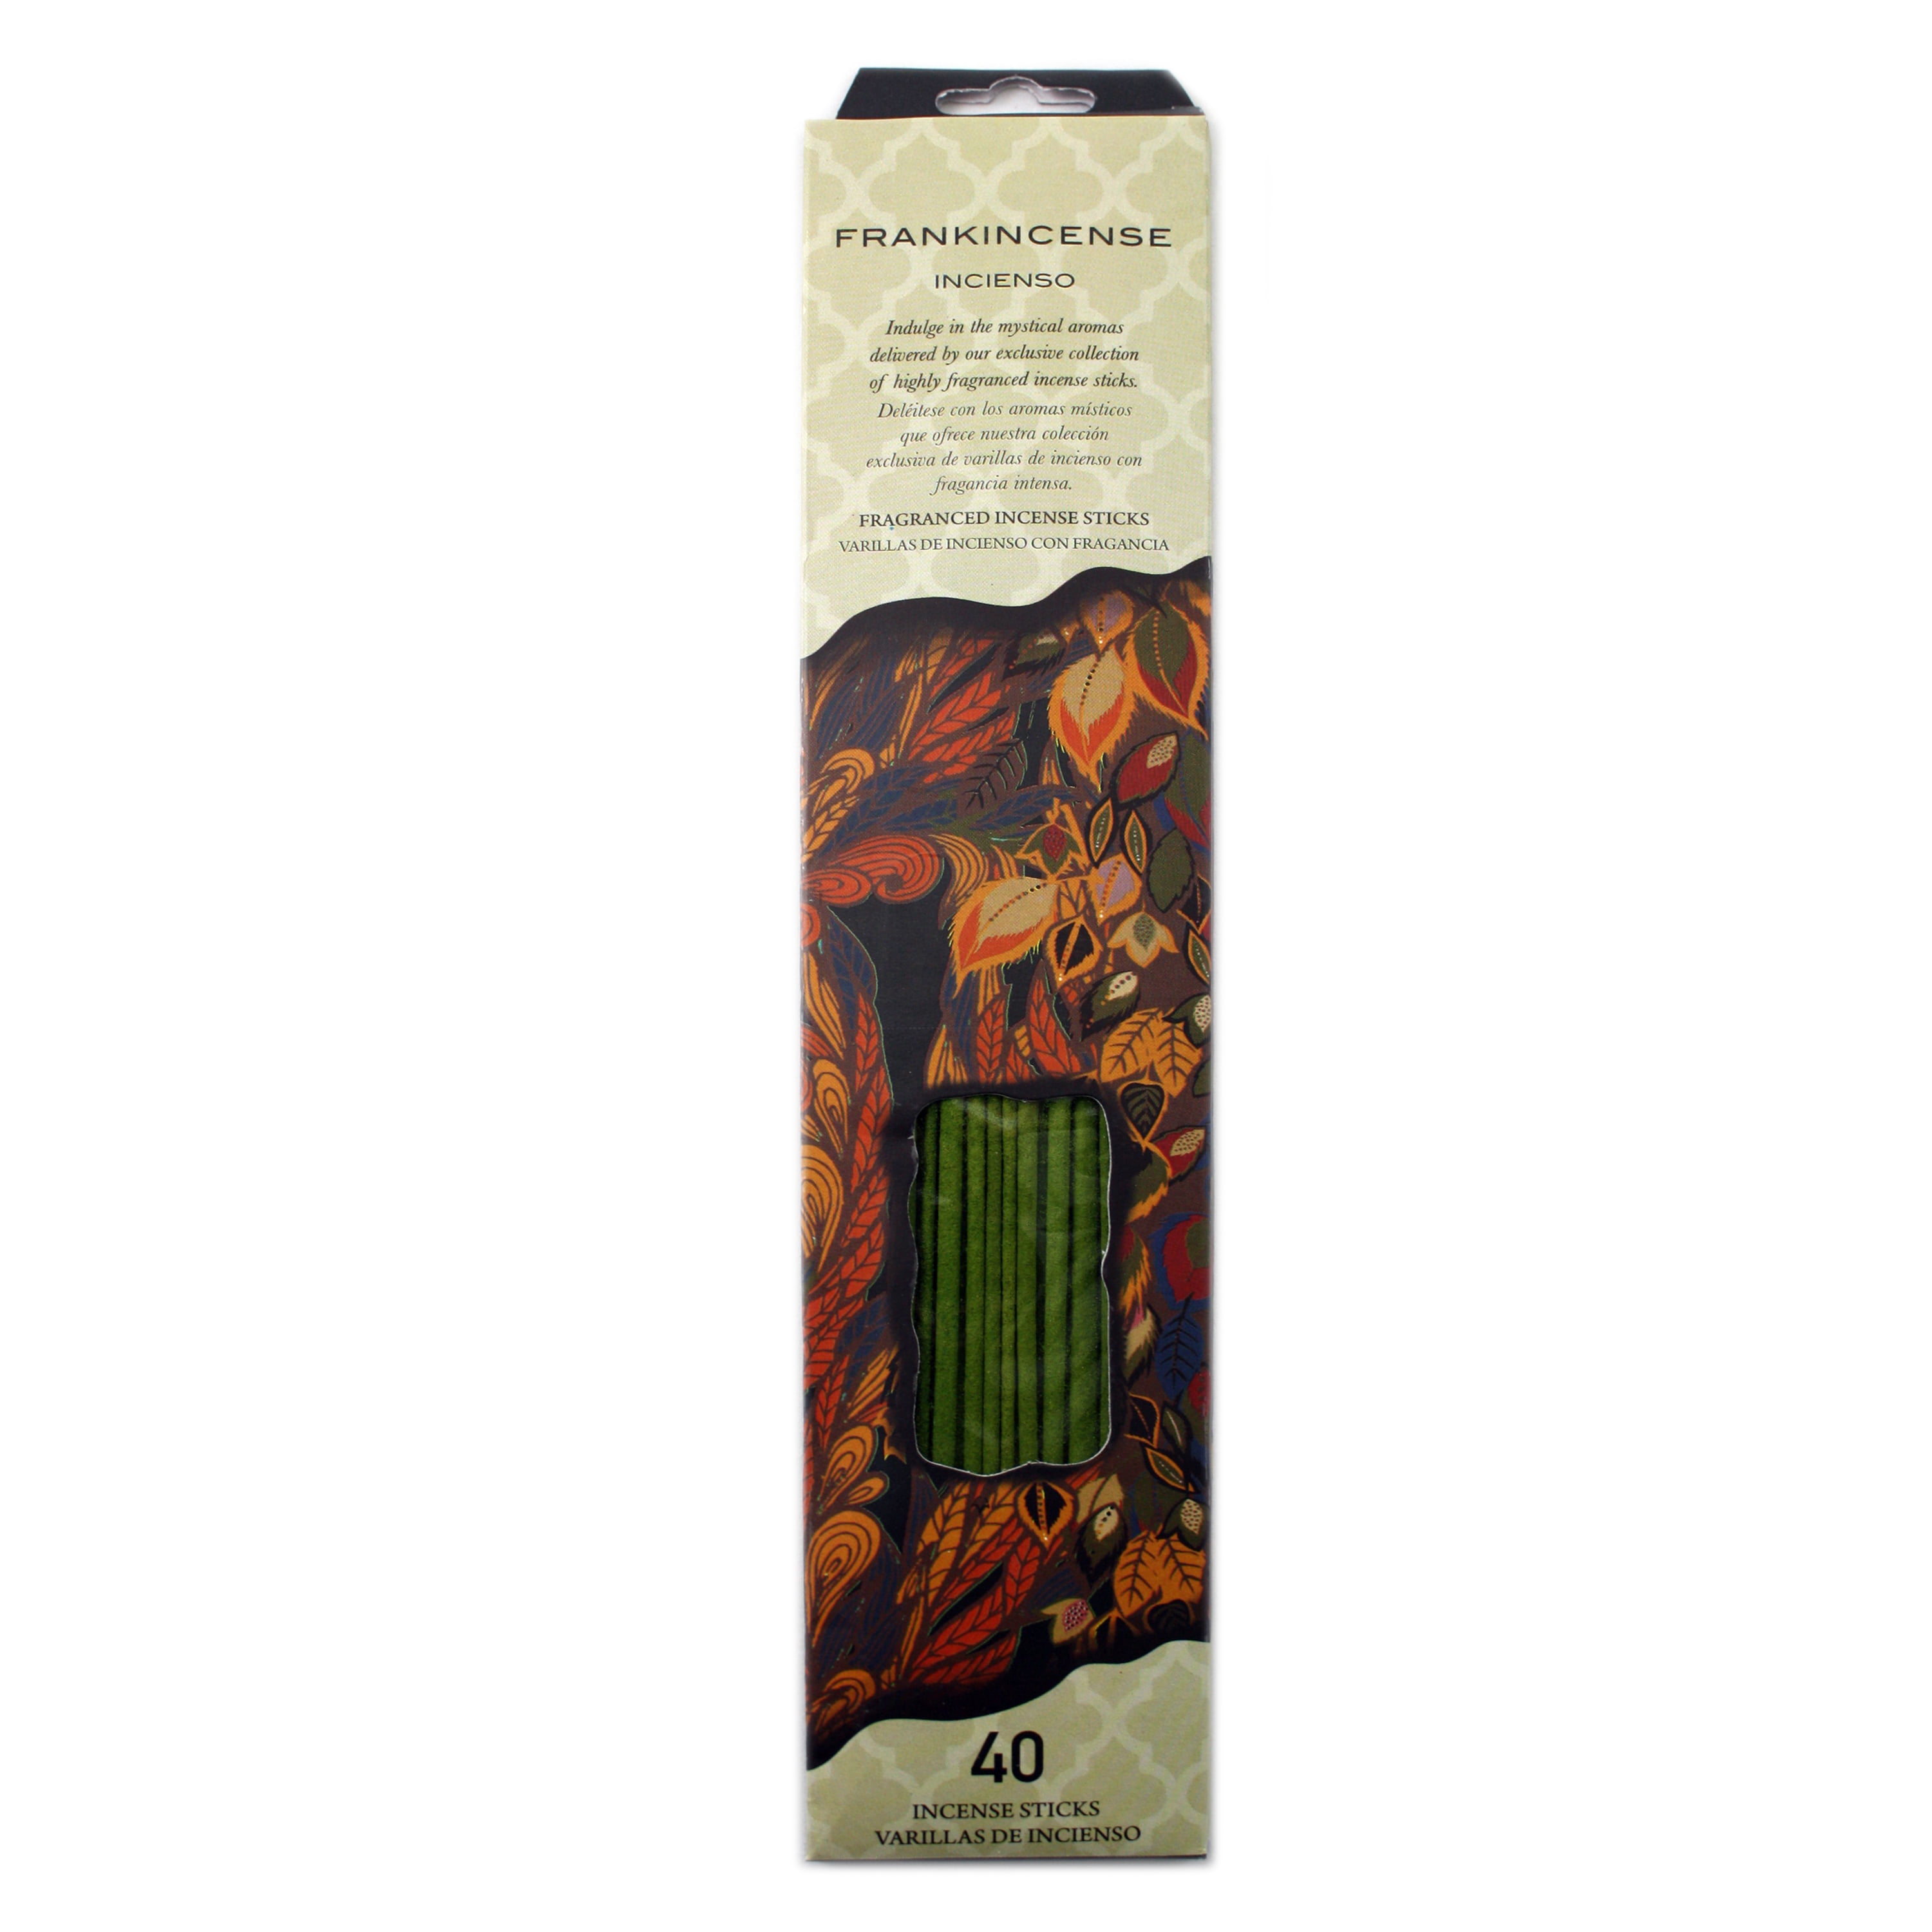 Flora Classique, Incense Sticks, Frankincense - Walmart.com - Walmart.com